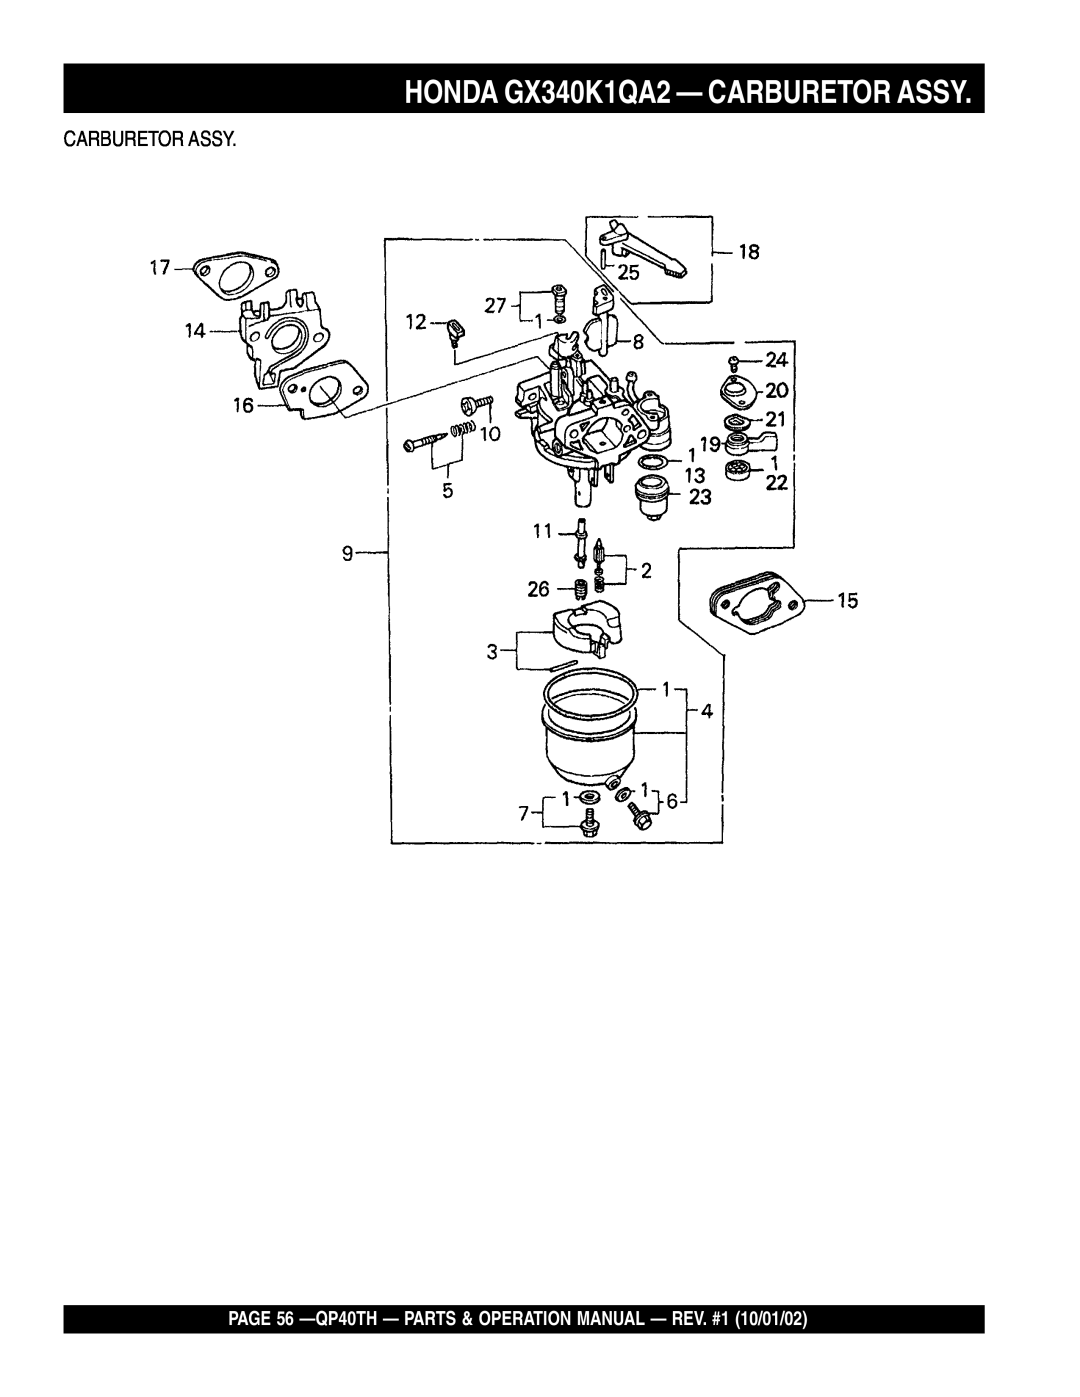 Multiquip QP40TH operation manual HONDA GX340K1QA2 - CARBURETOR ASSY, Carburetor Assy 